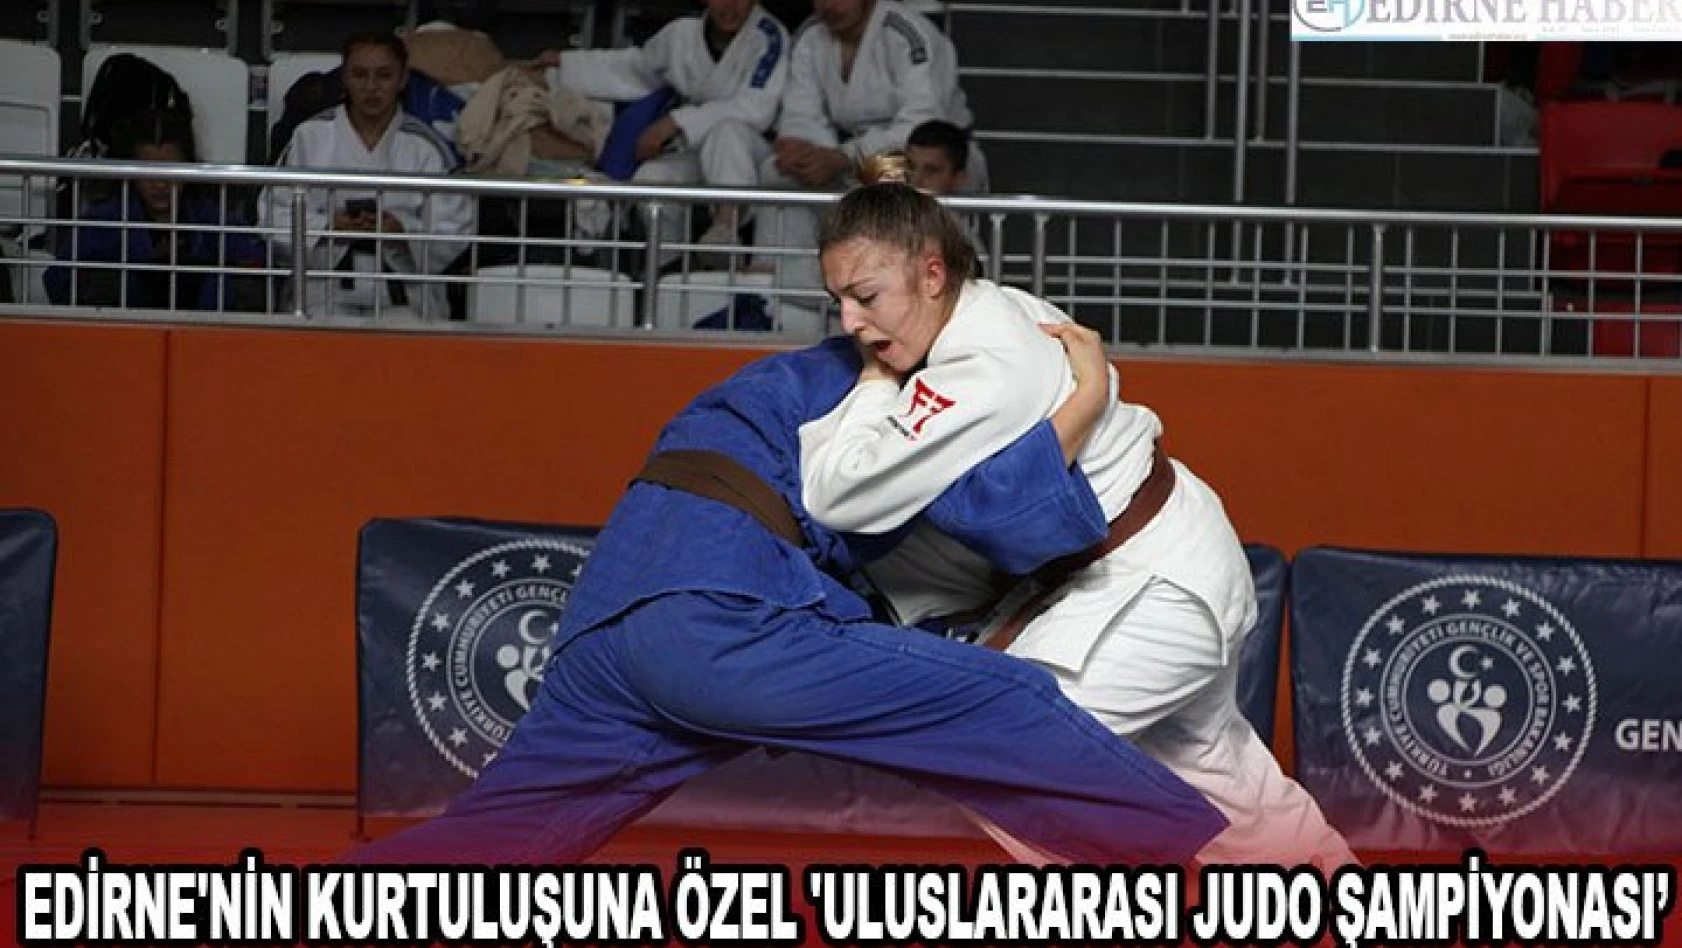 Edirne'nin kurtuluşuna özel 'Uluslararası Judo Şampiyonası'